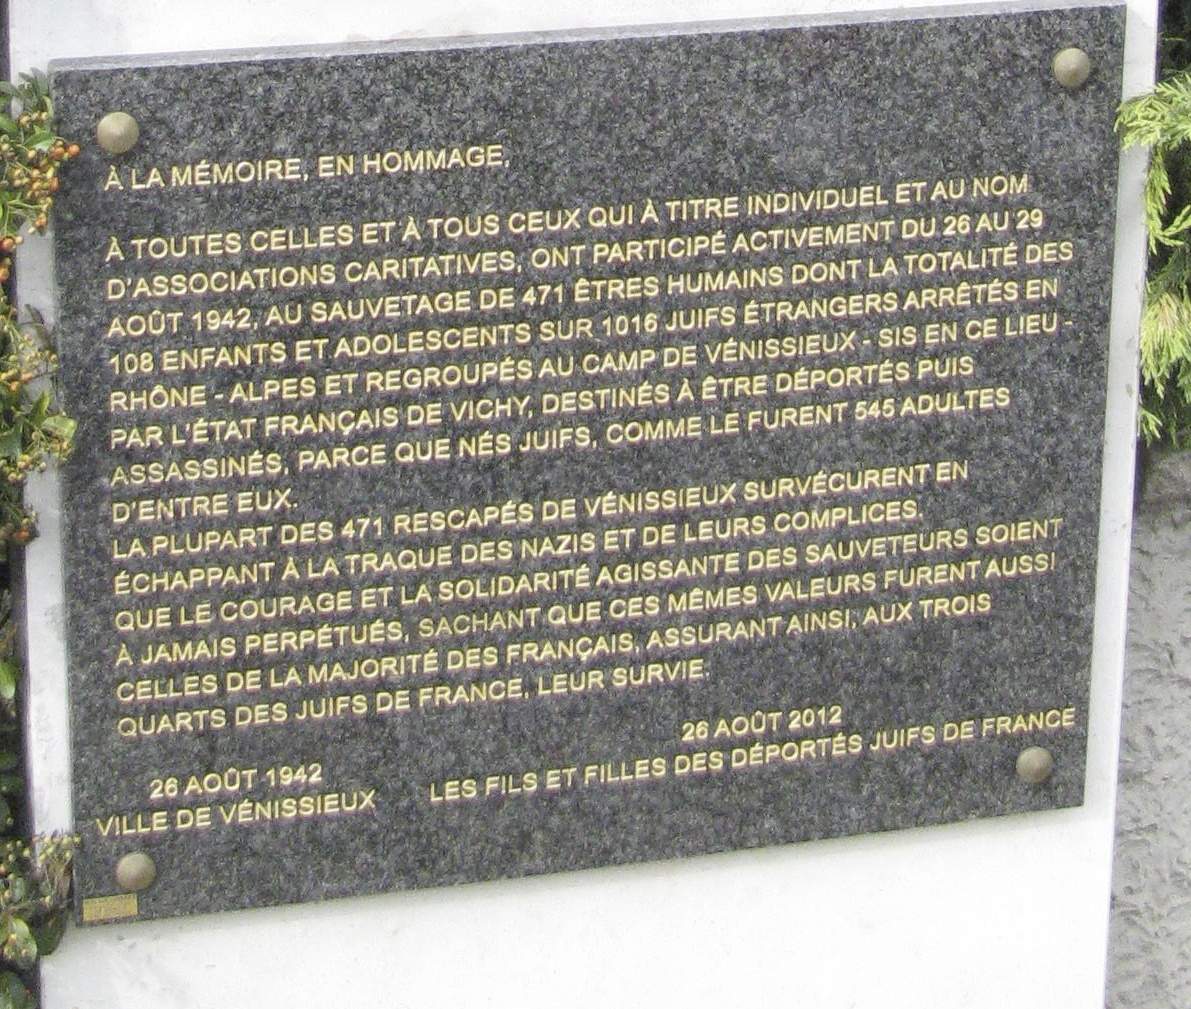 plaque-commc3a9mo-vc3a9nissieux-1942.jpg